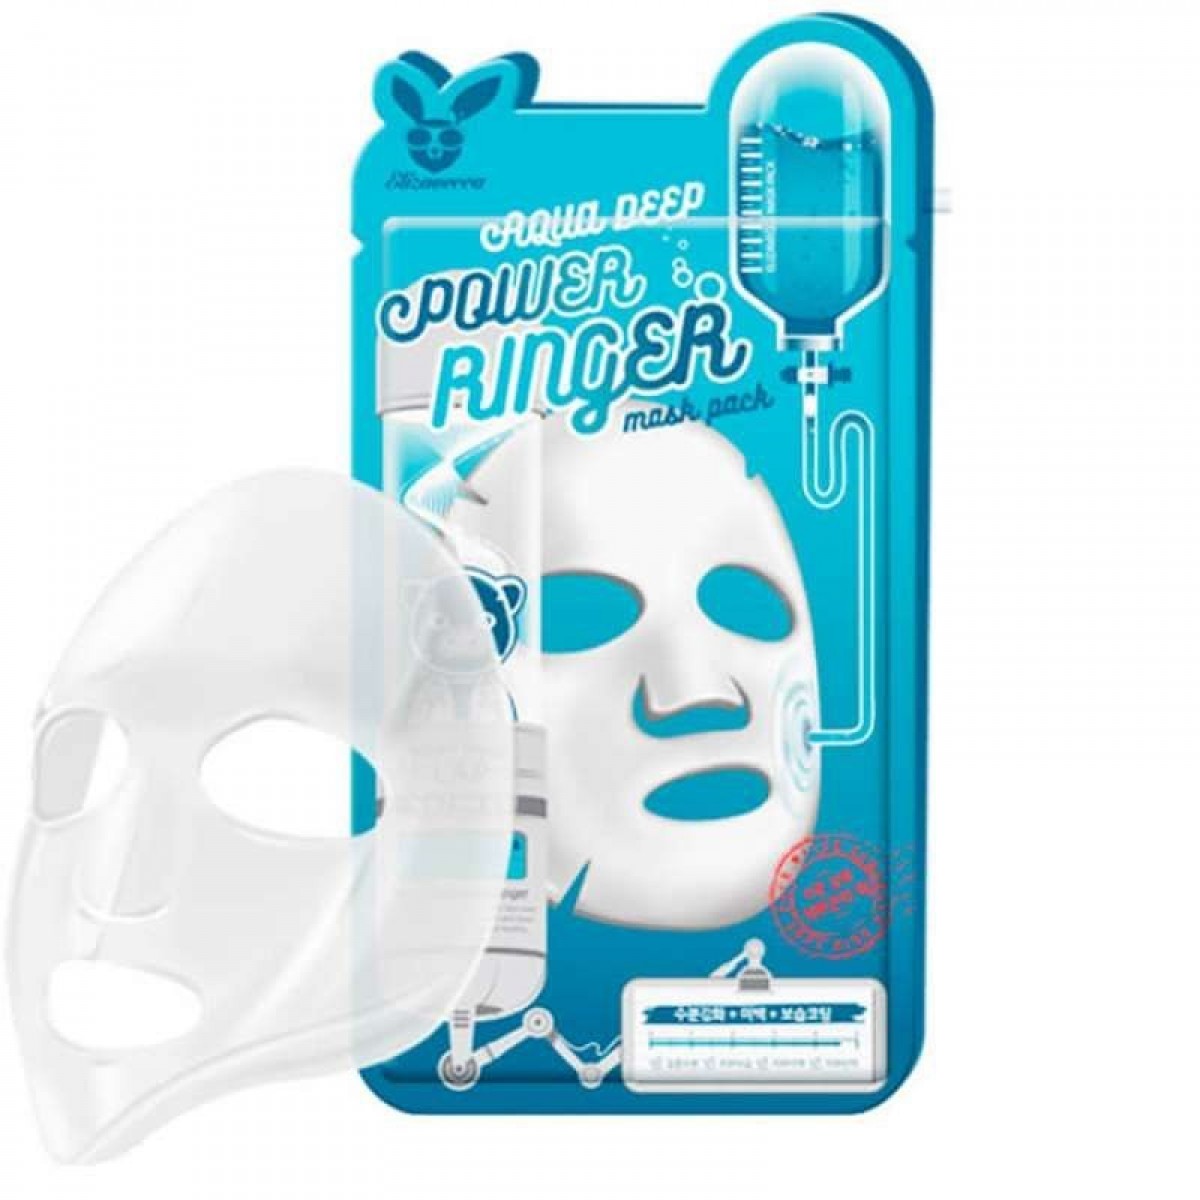 Тканевая маска для лица с гиалуроновой кислотой Elizavecca Aqua Deep Power Ringer Mask Pack 